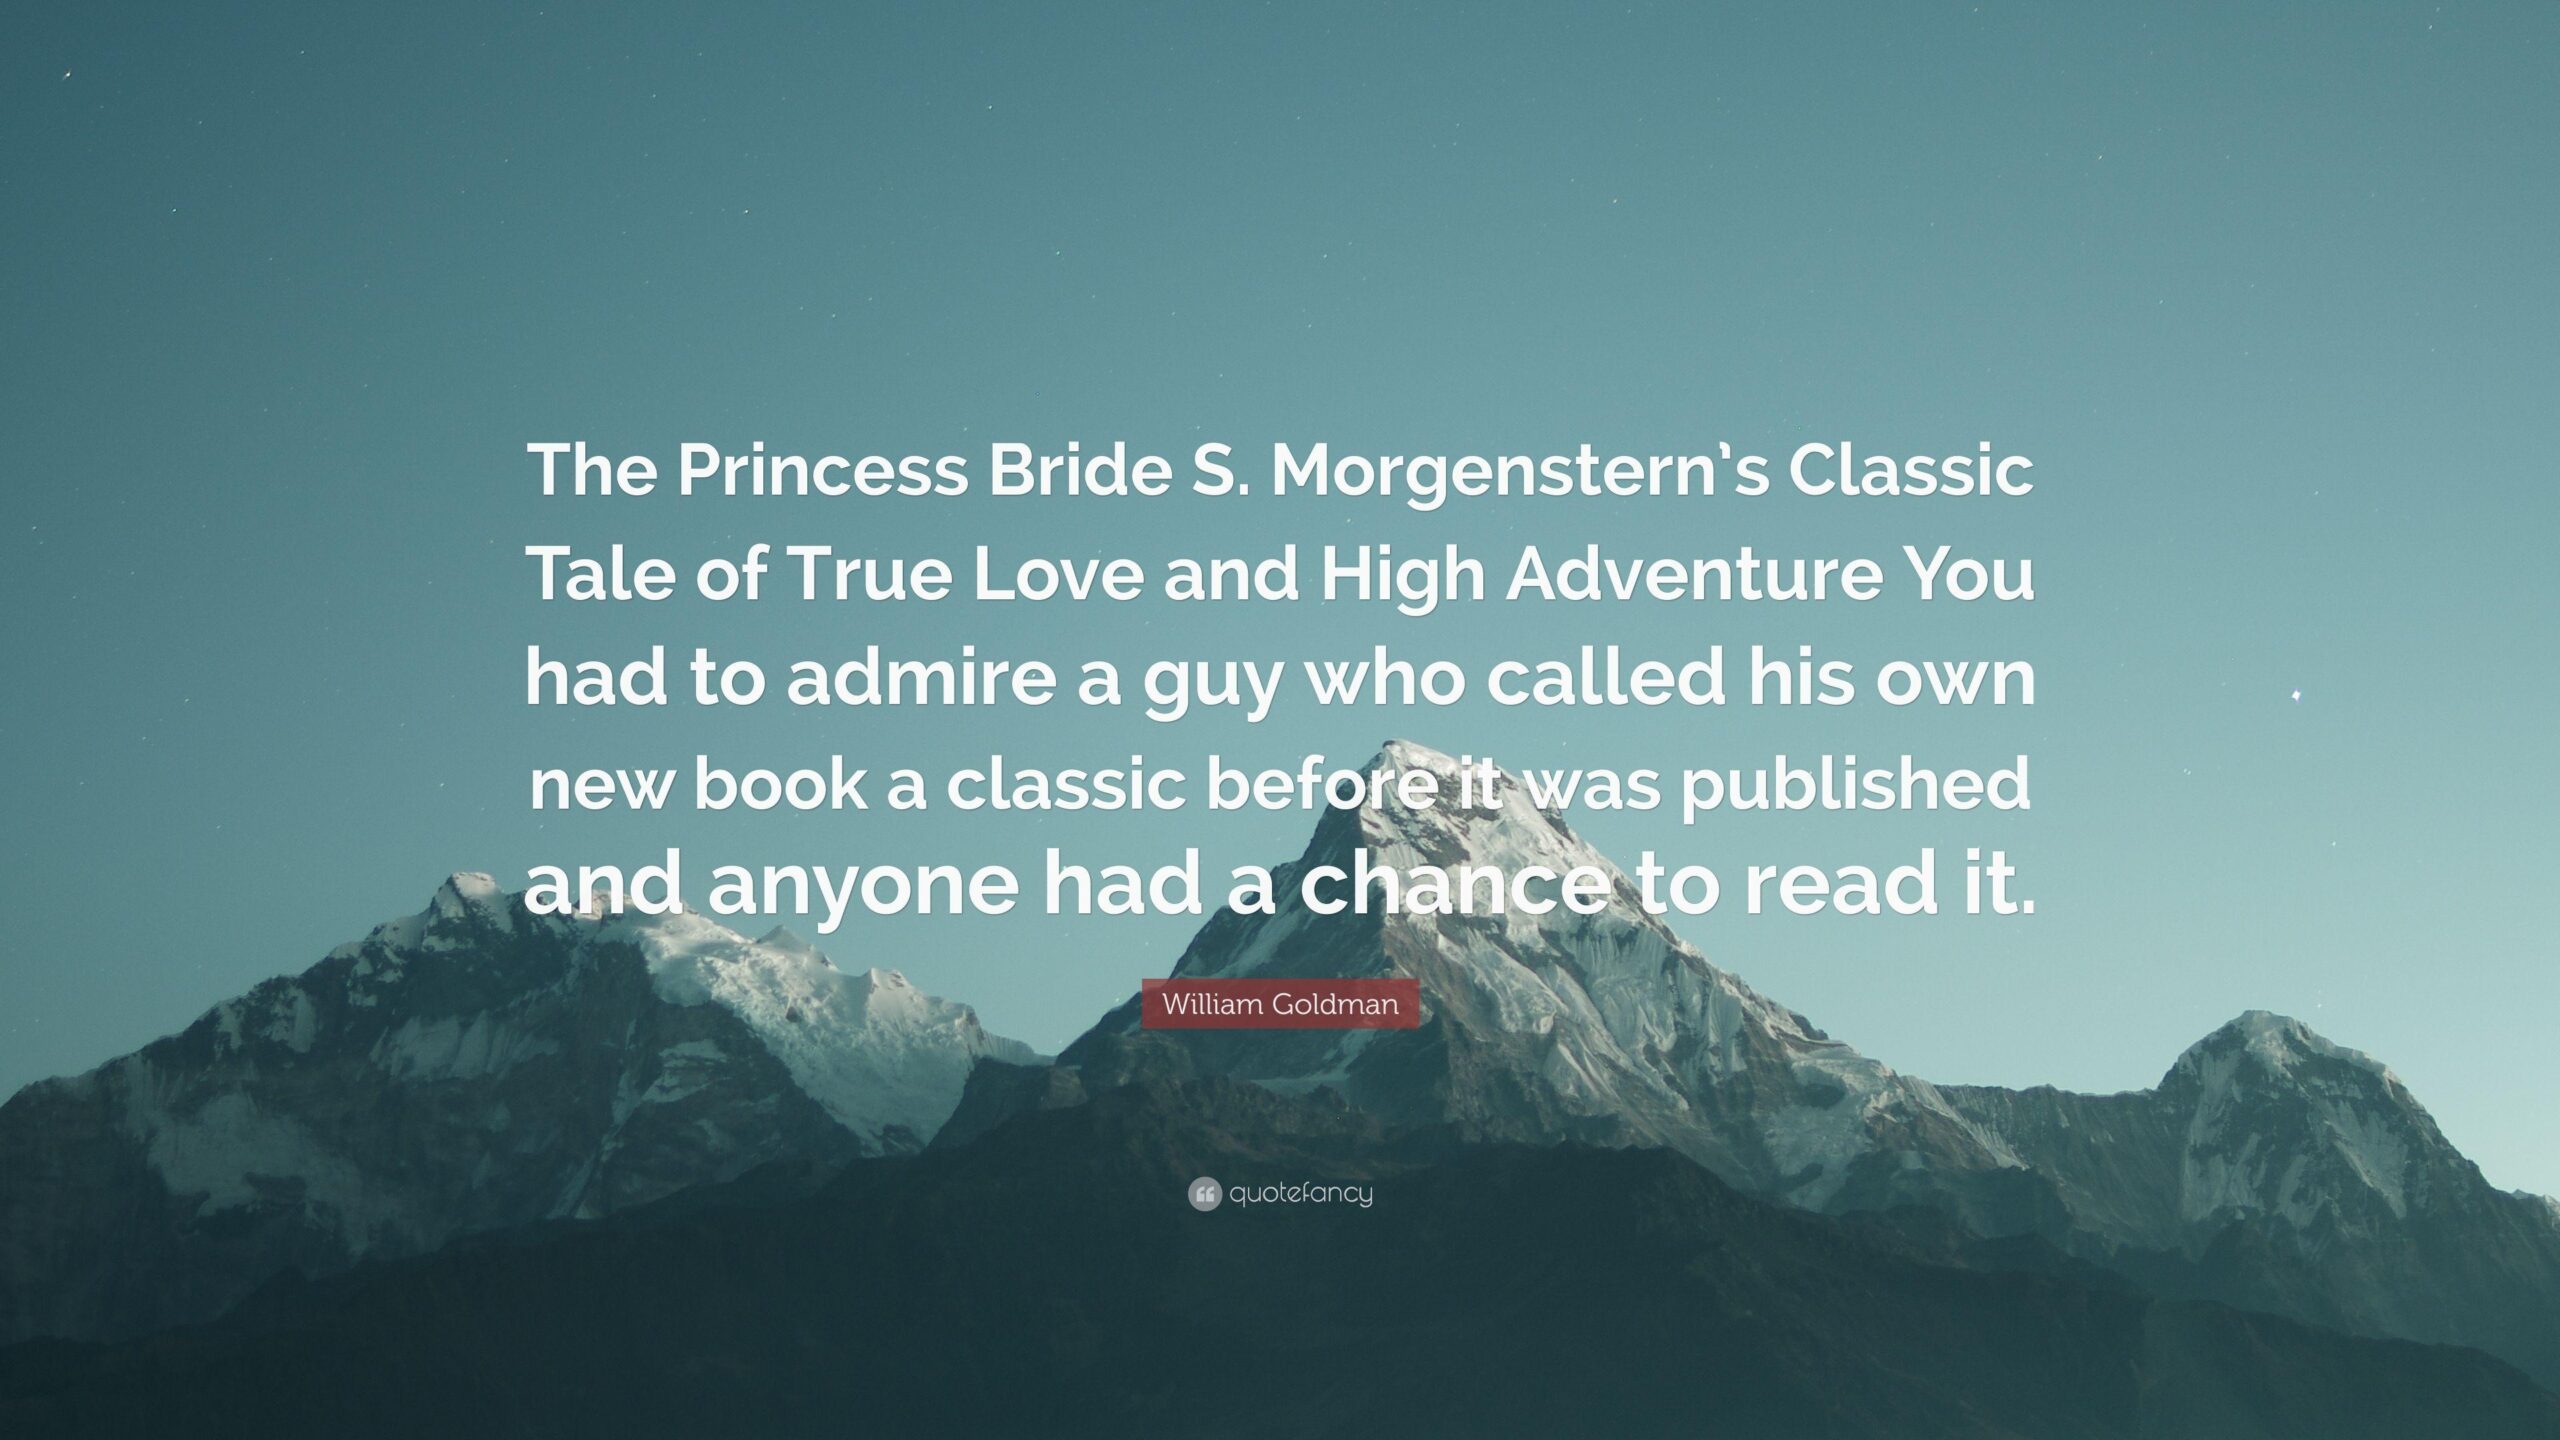 William Goldman Quote “The Princess Bride S Morgenstern’s Classic